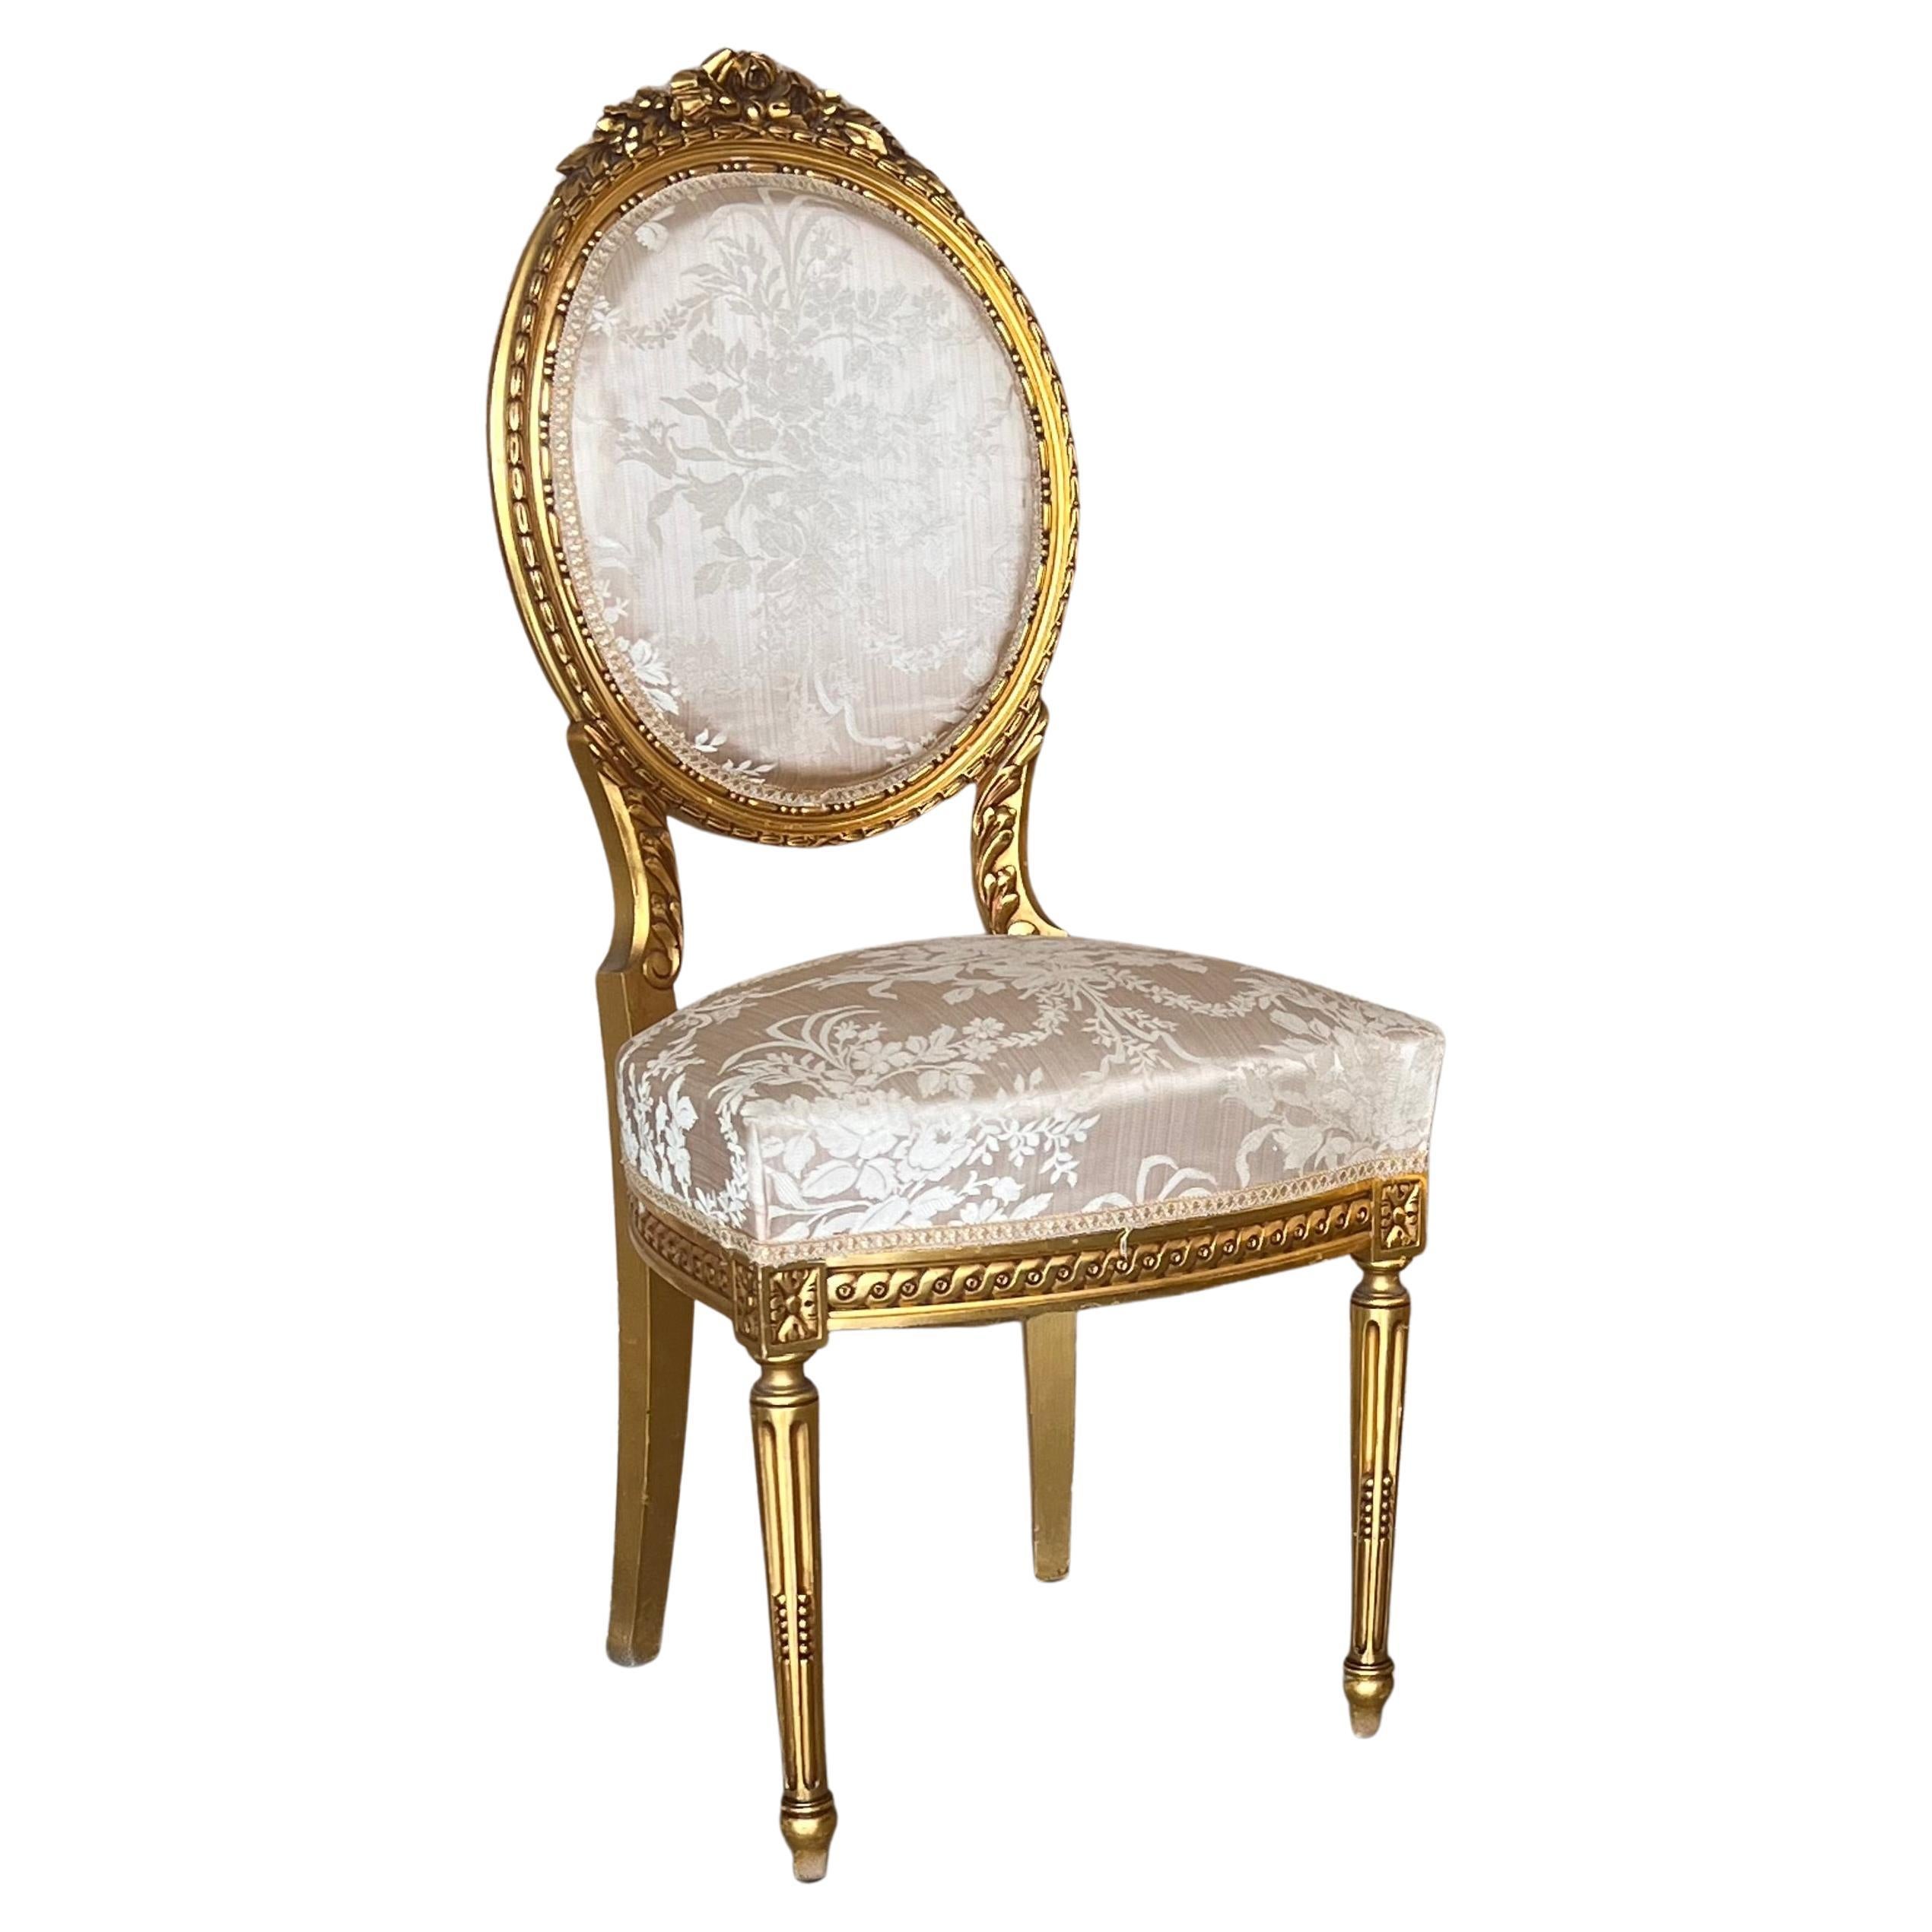 Chaise d'appoint française ancienne de style Louis XVI, dorée à la feuille et peinte